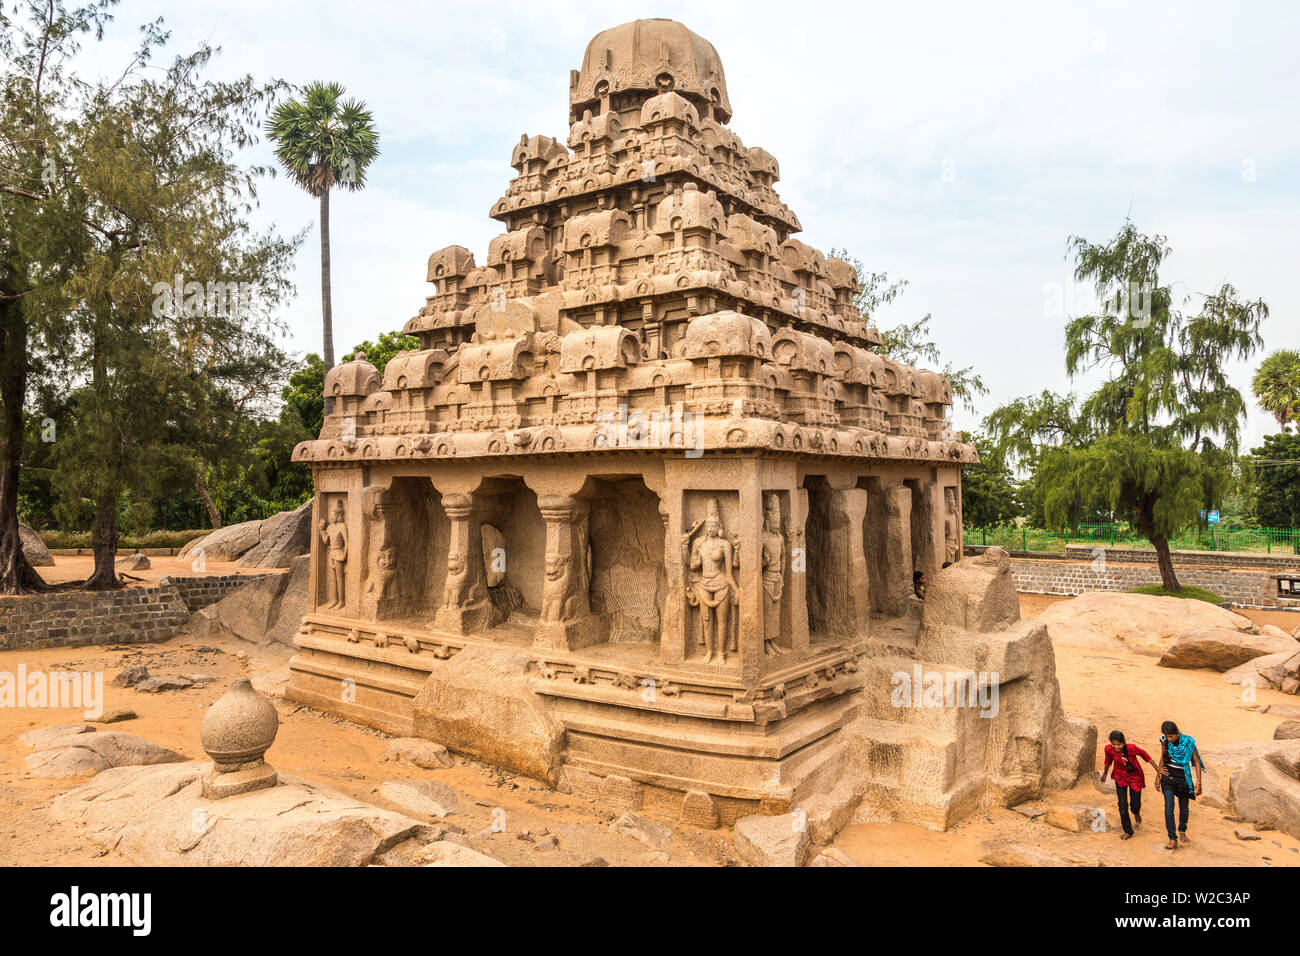 Temple, Mamallapuram, Tamil Nadu, India Stock Photo